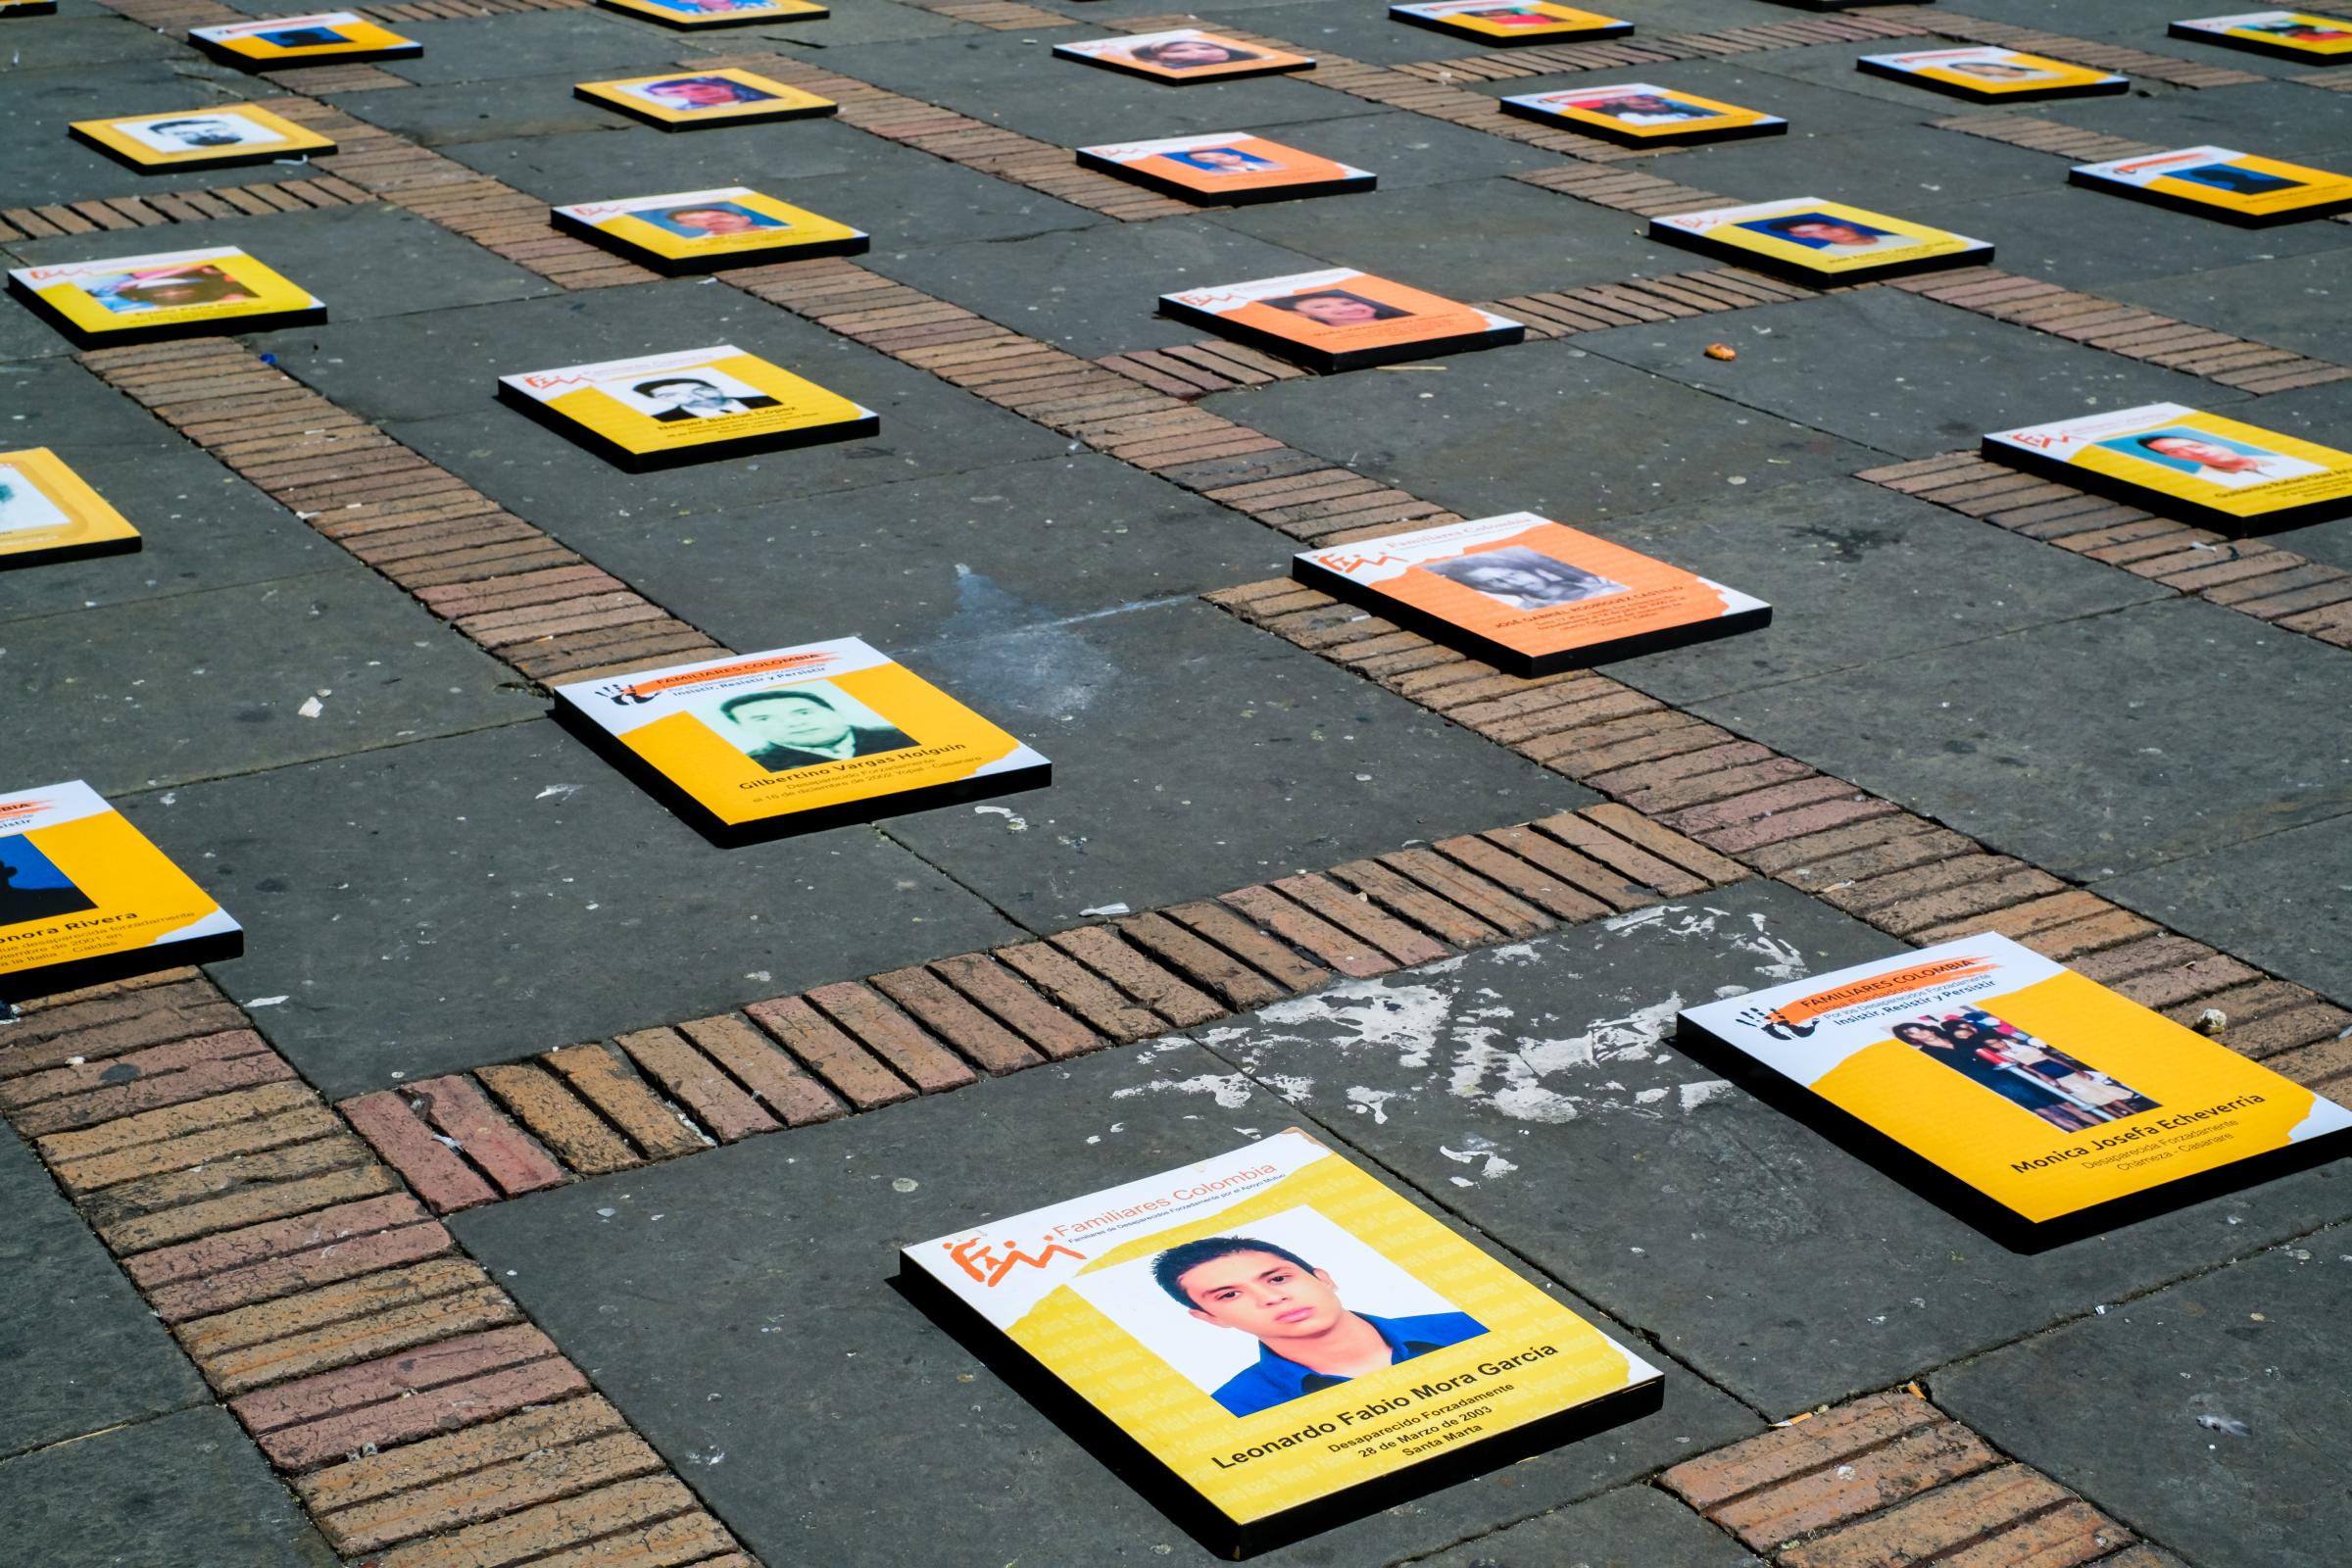 International Day of the Disappeared Bogota 2022 - Dia Internacional das Vitimas de Desaparecimento Forçado,...